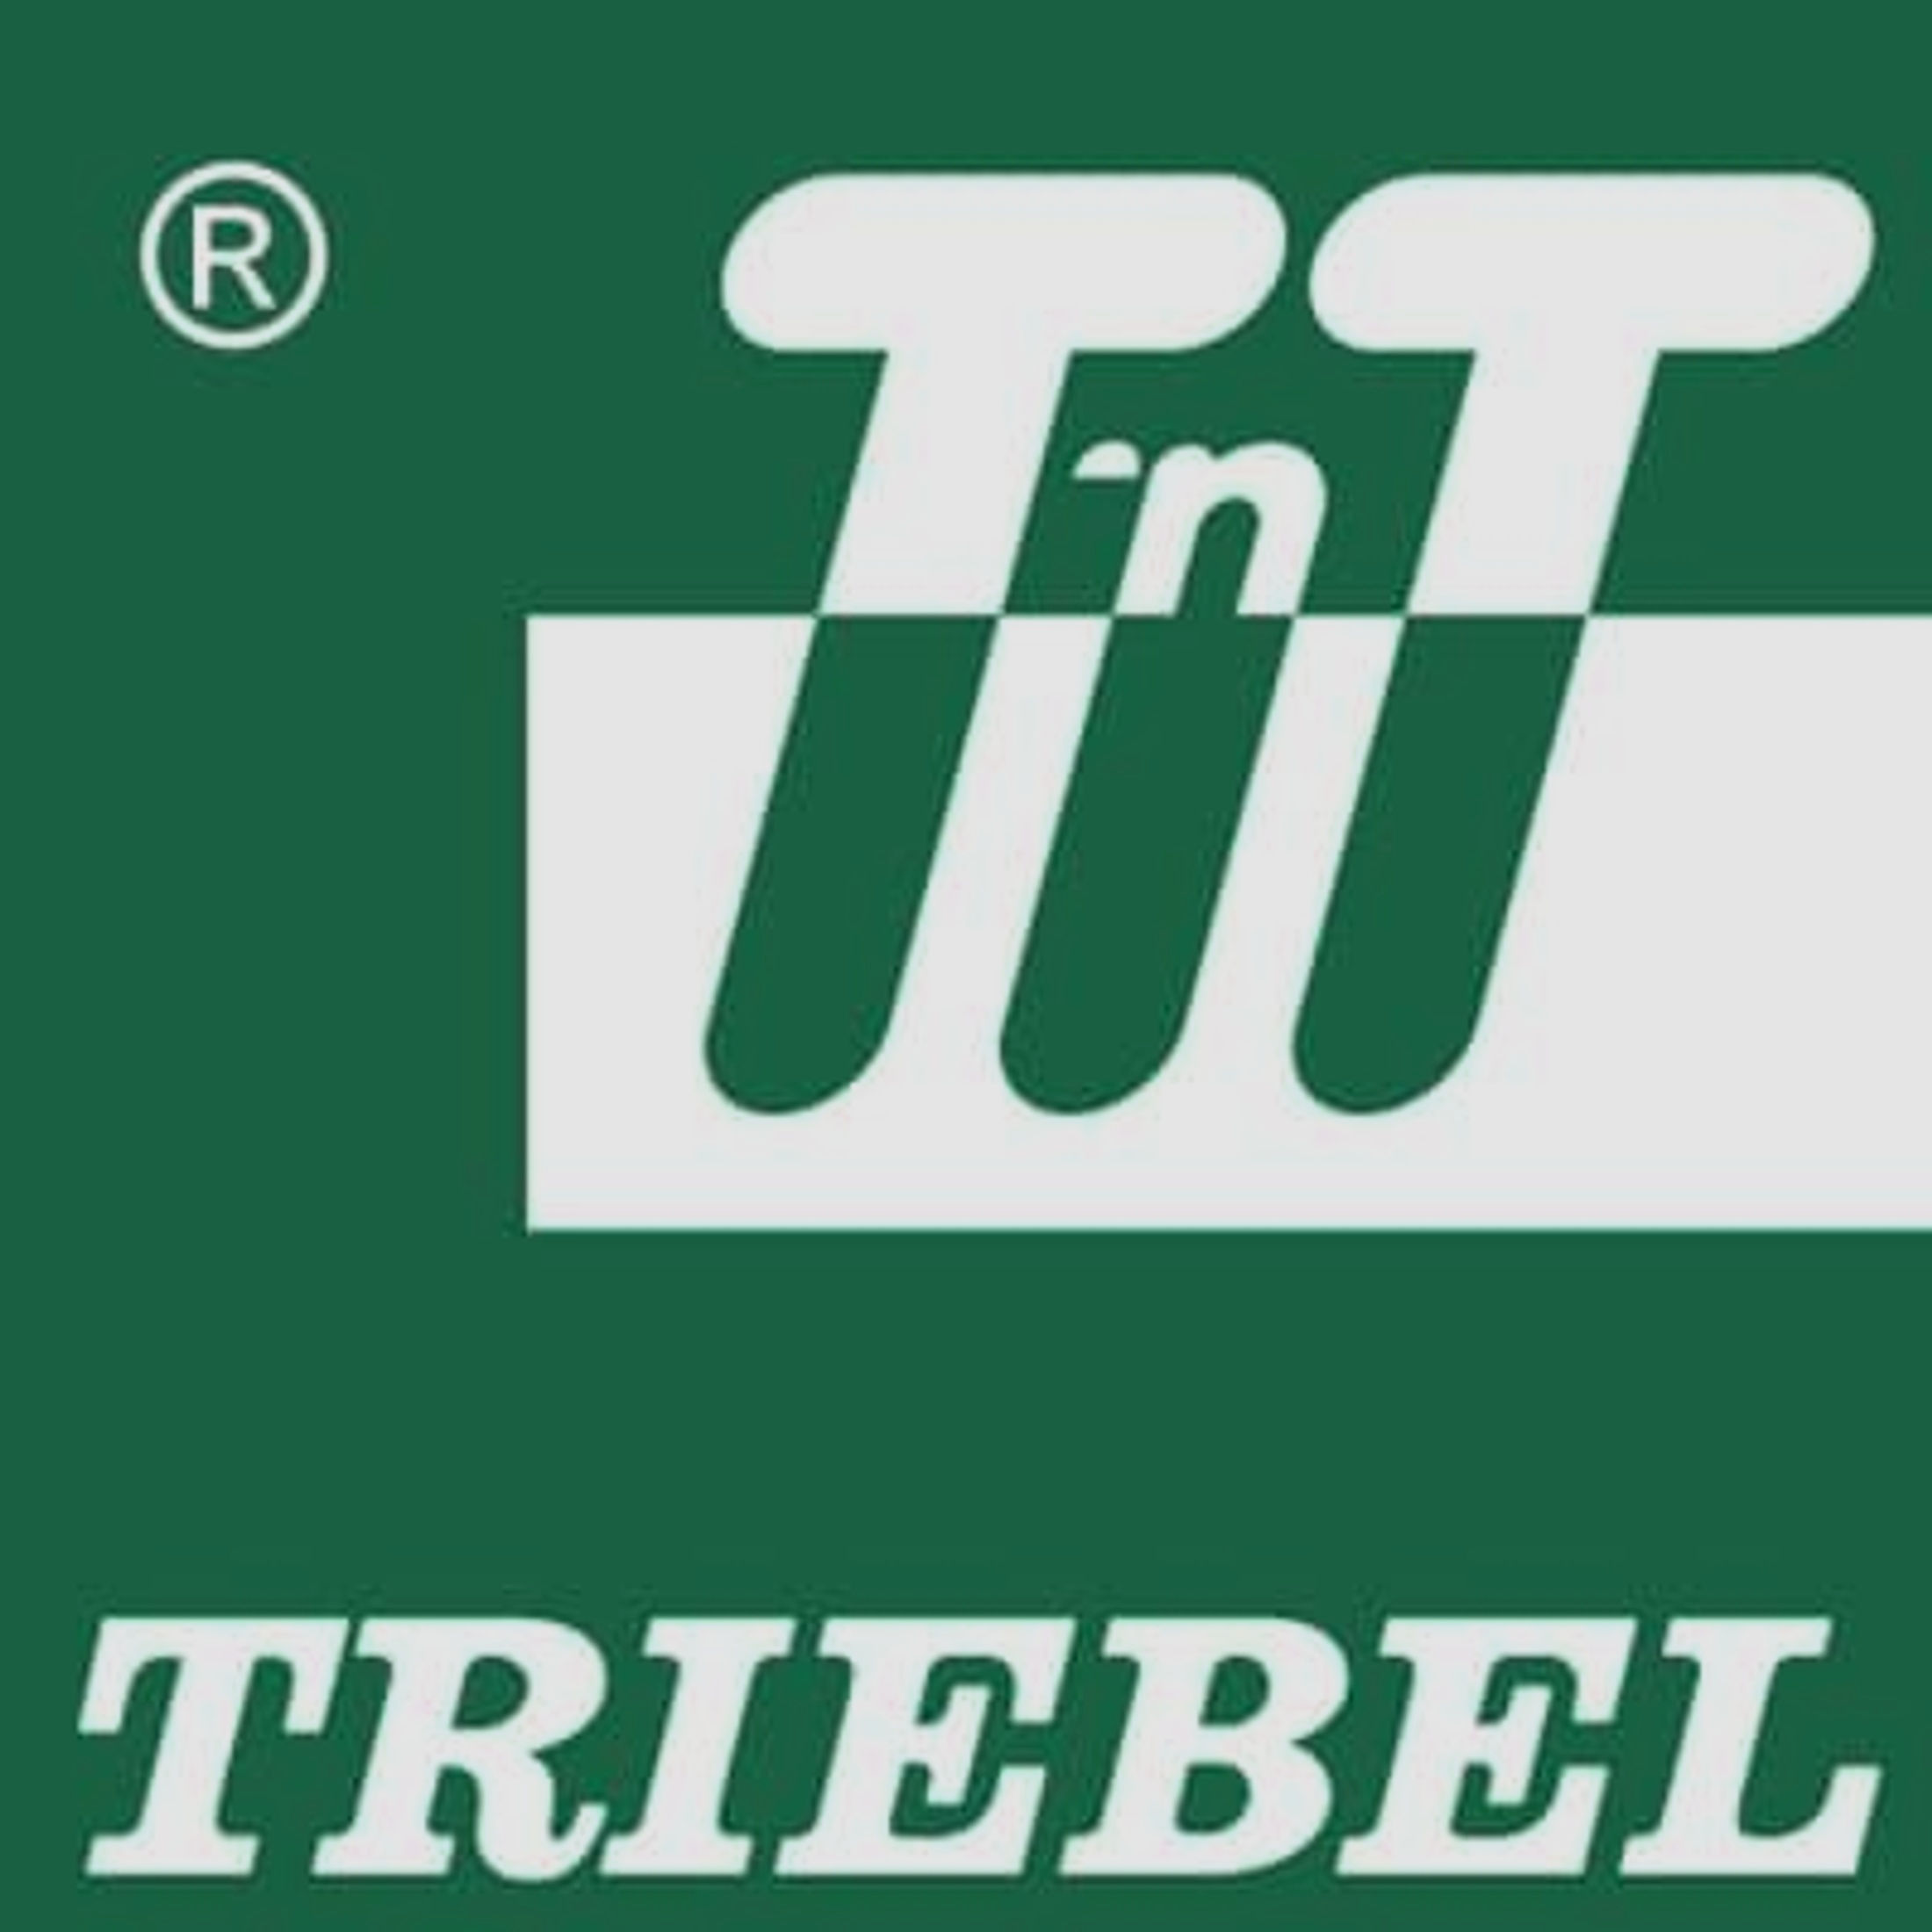 T'n T Triebel Werkstatt Montage und Anschuss f. S&W Revolver + Point